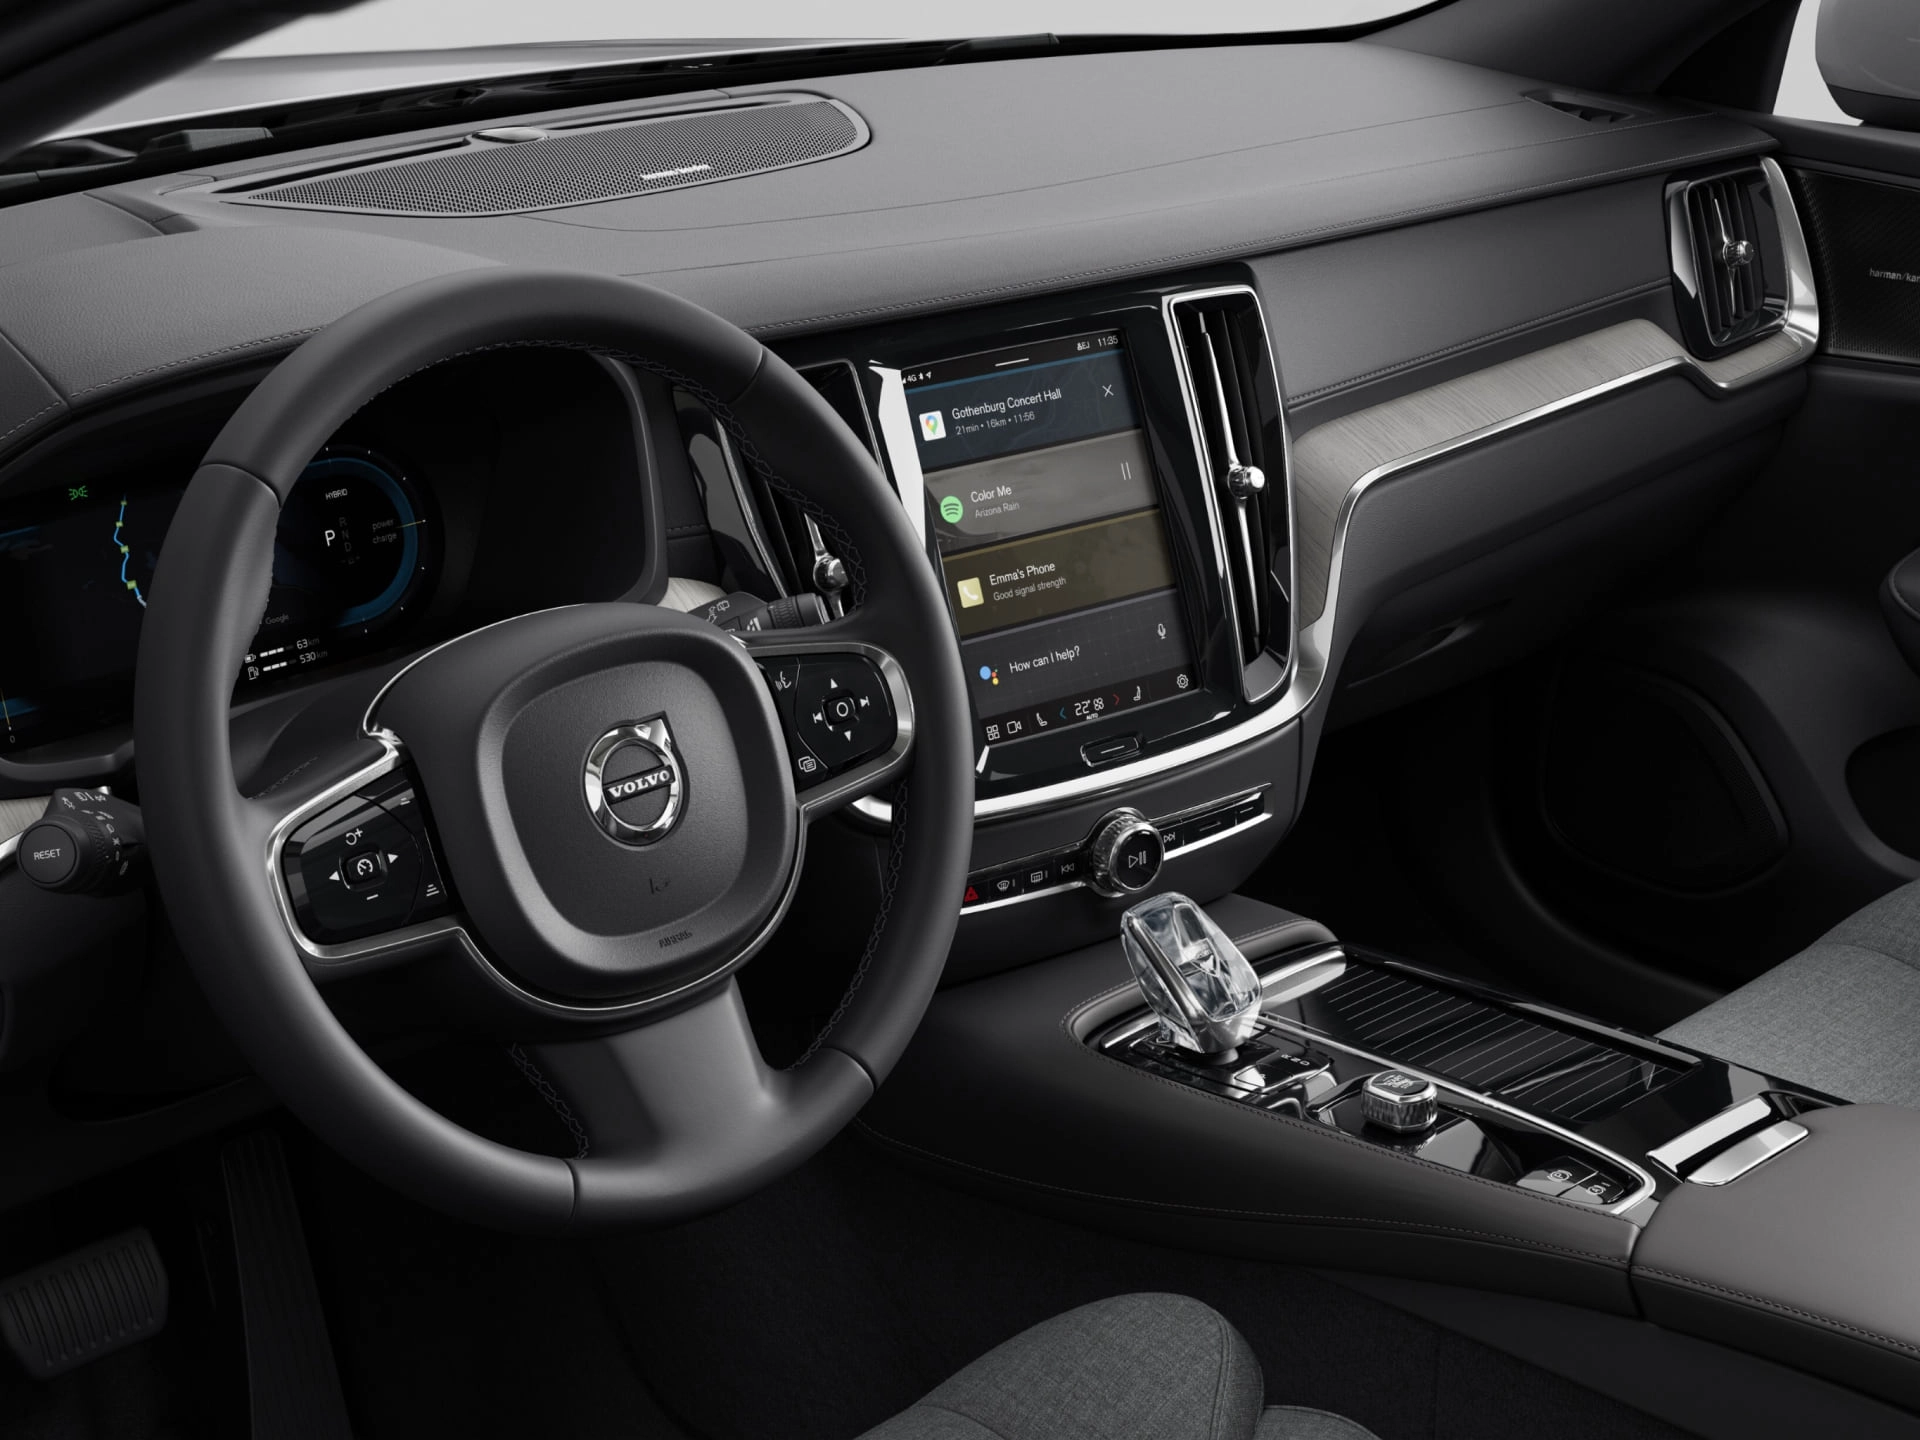 Krupni plan sjedišta vozača, upravljača i centralnog ekrana u Volvo limuzini.